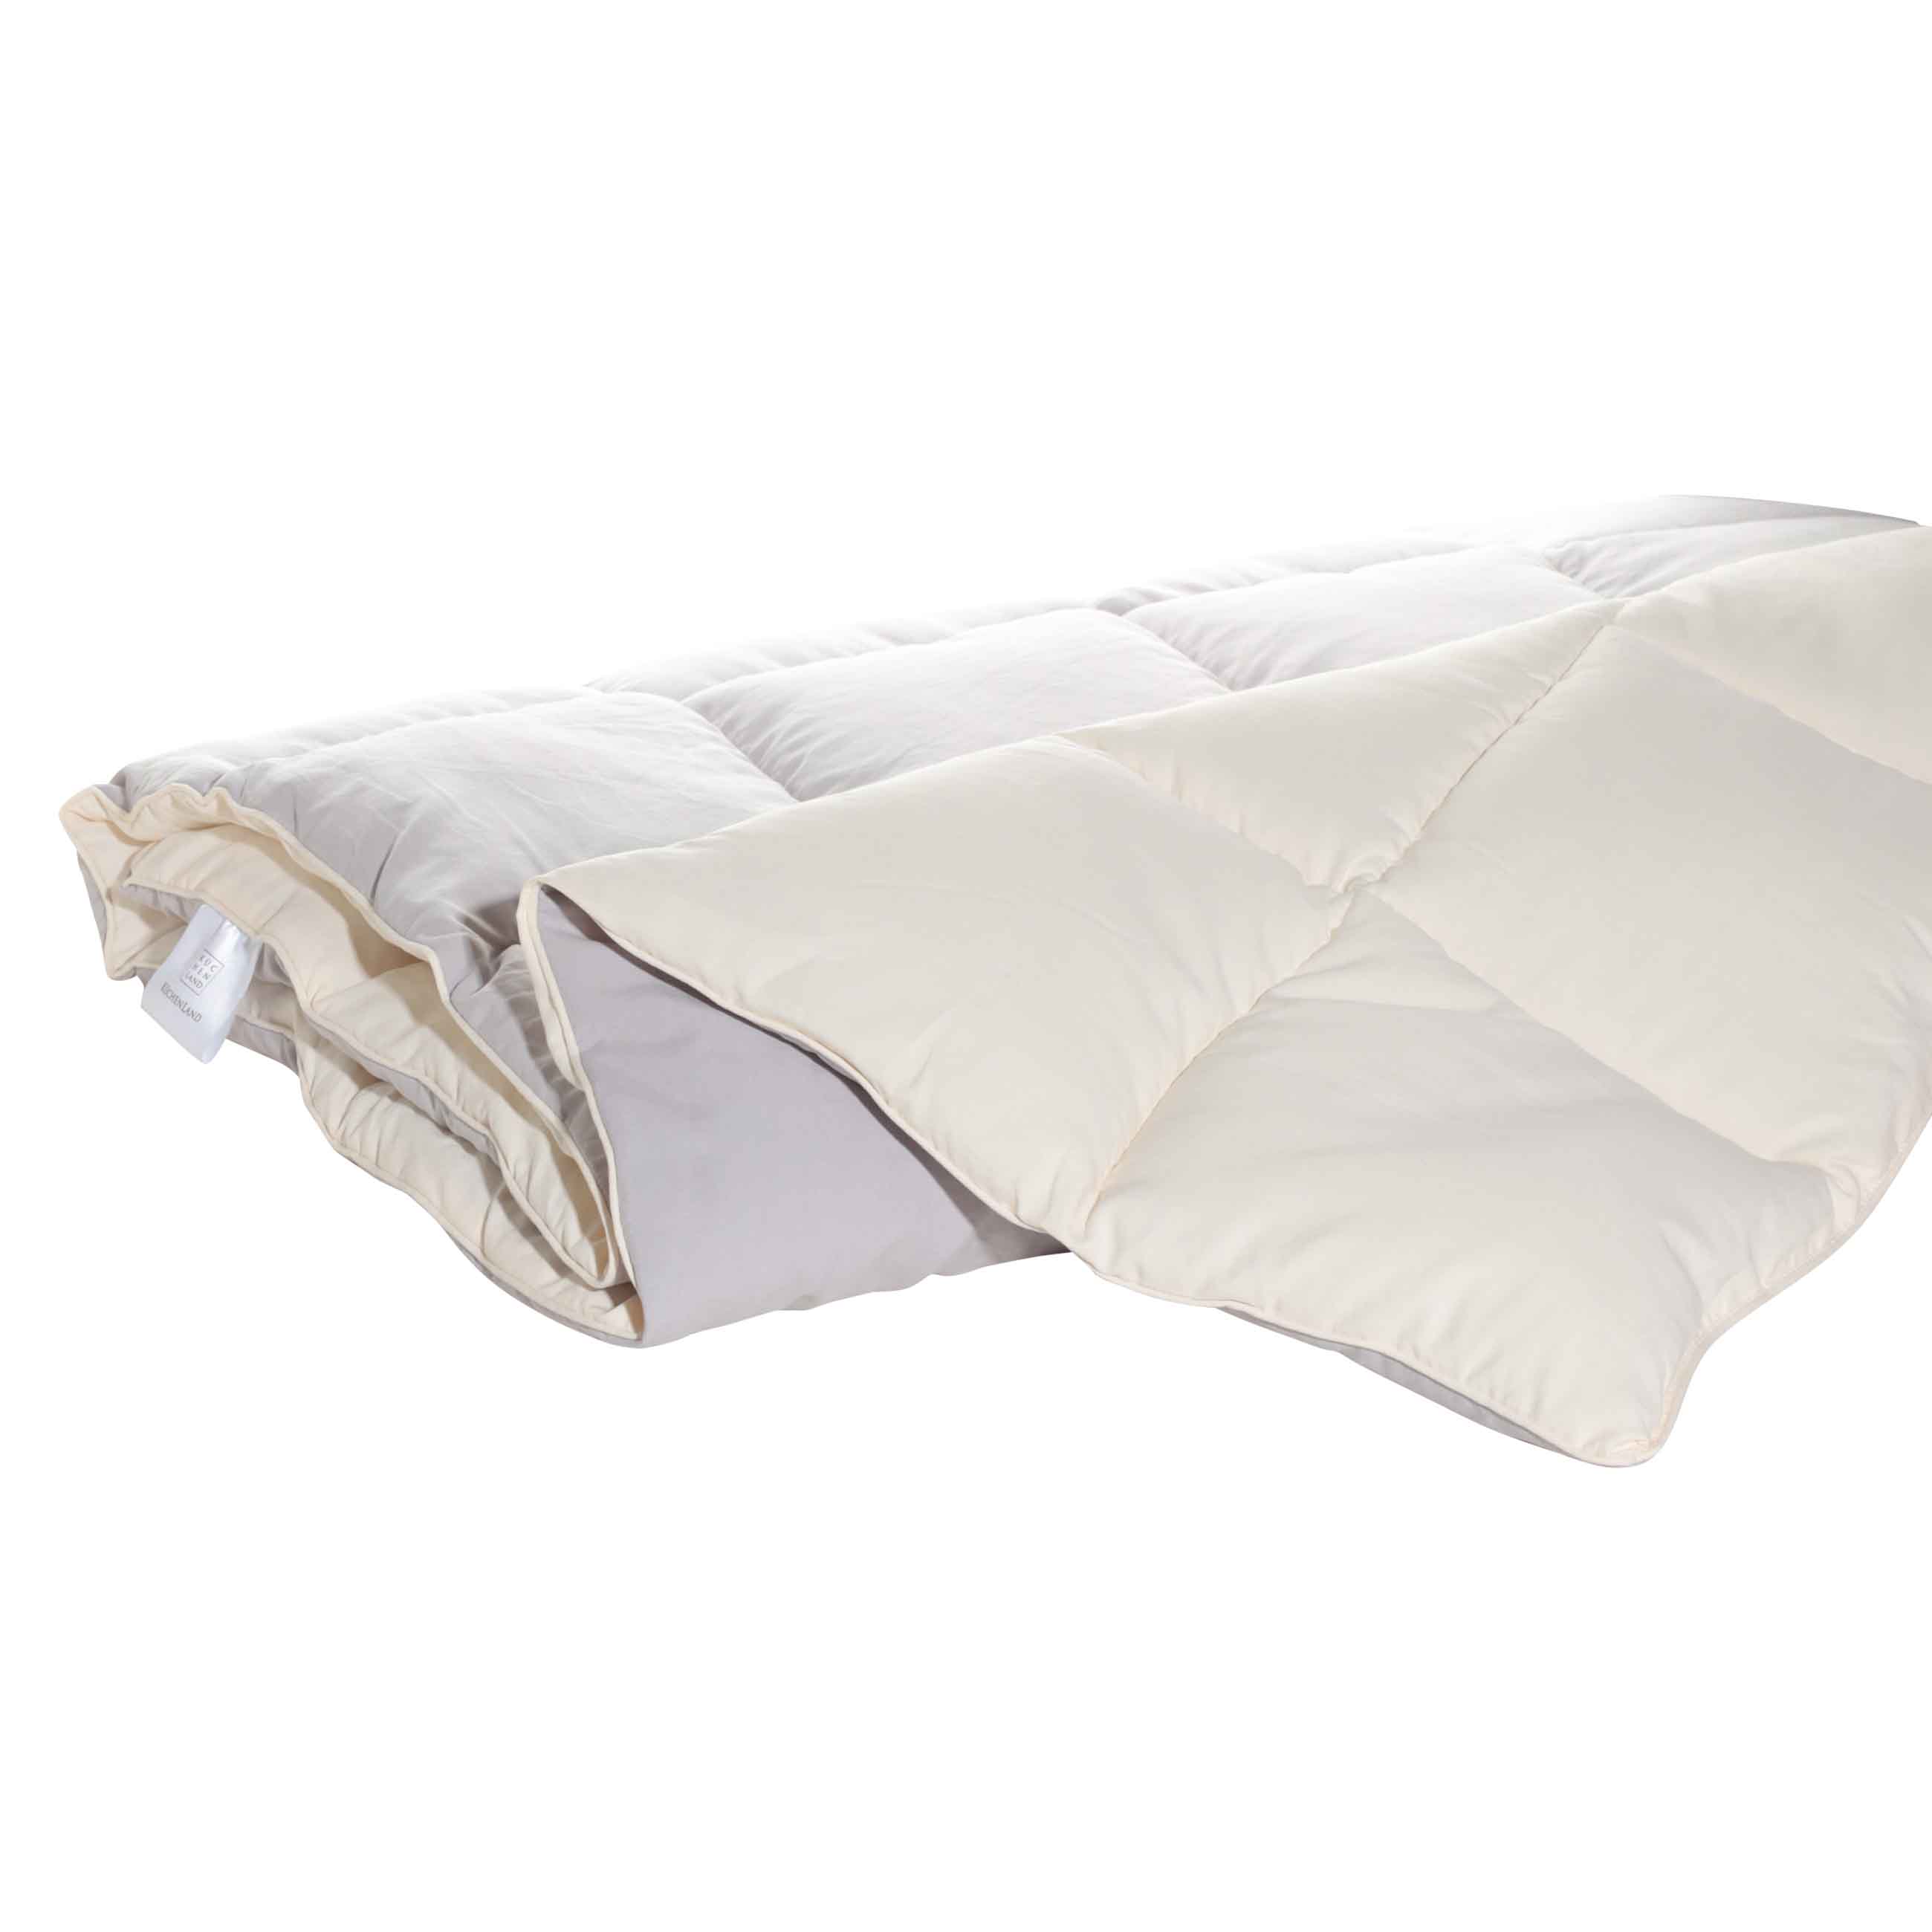 Одеяло, 140х200 см, микрофибра/холлофайбер, бежевое/молочное, Hollow fiber изображение № 2